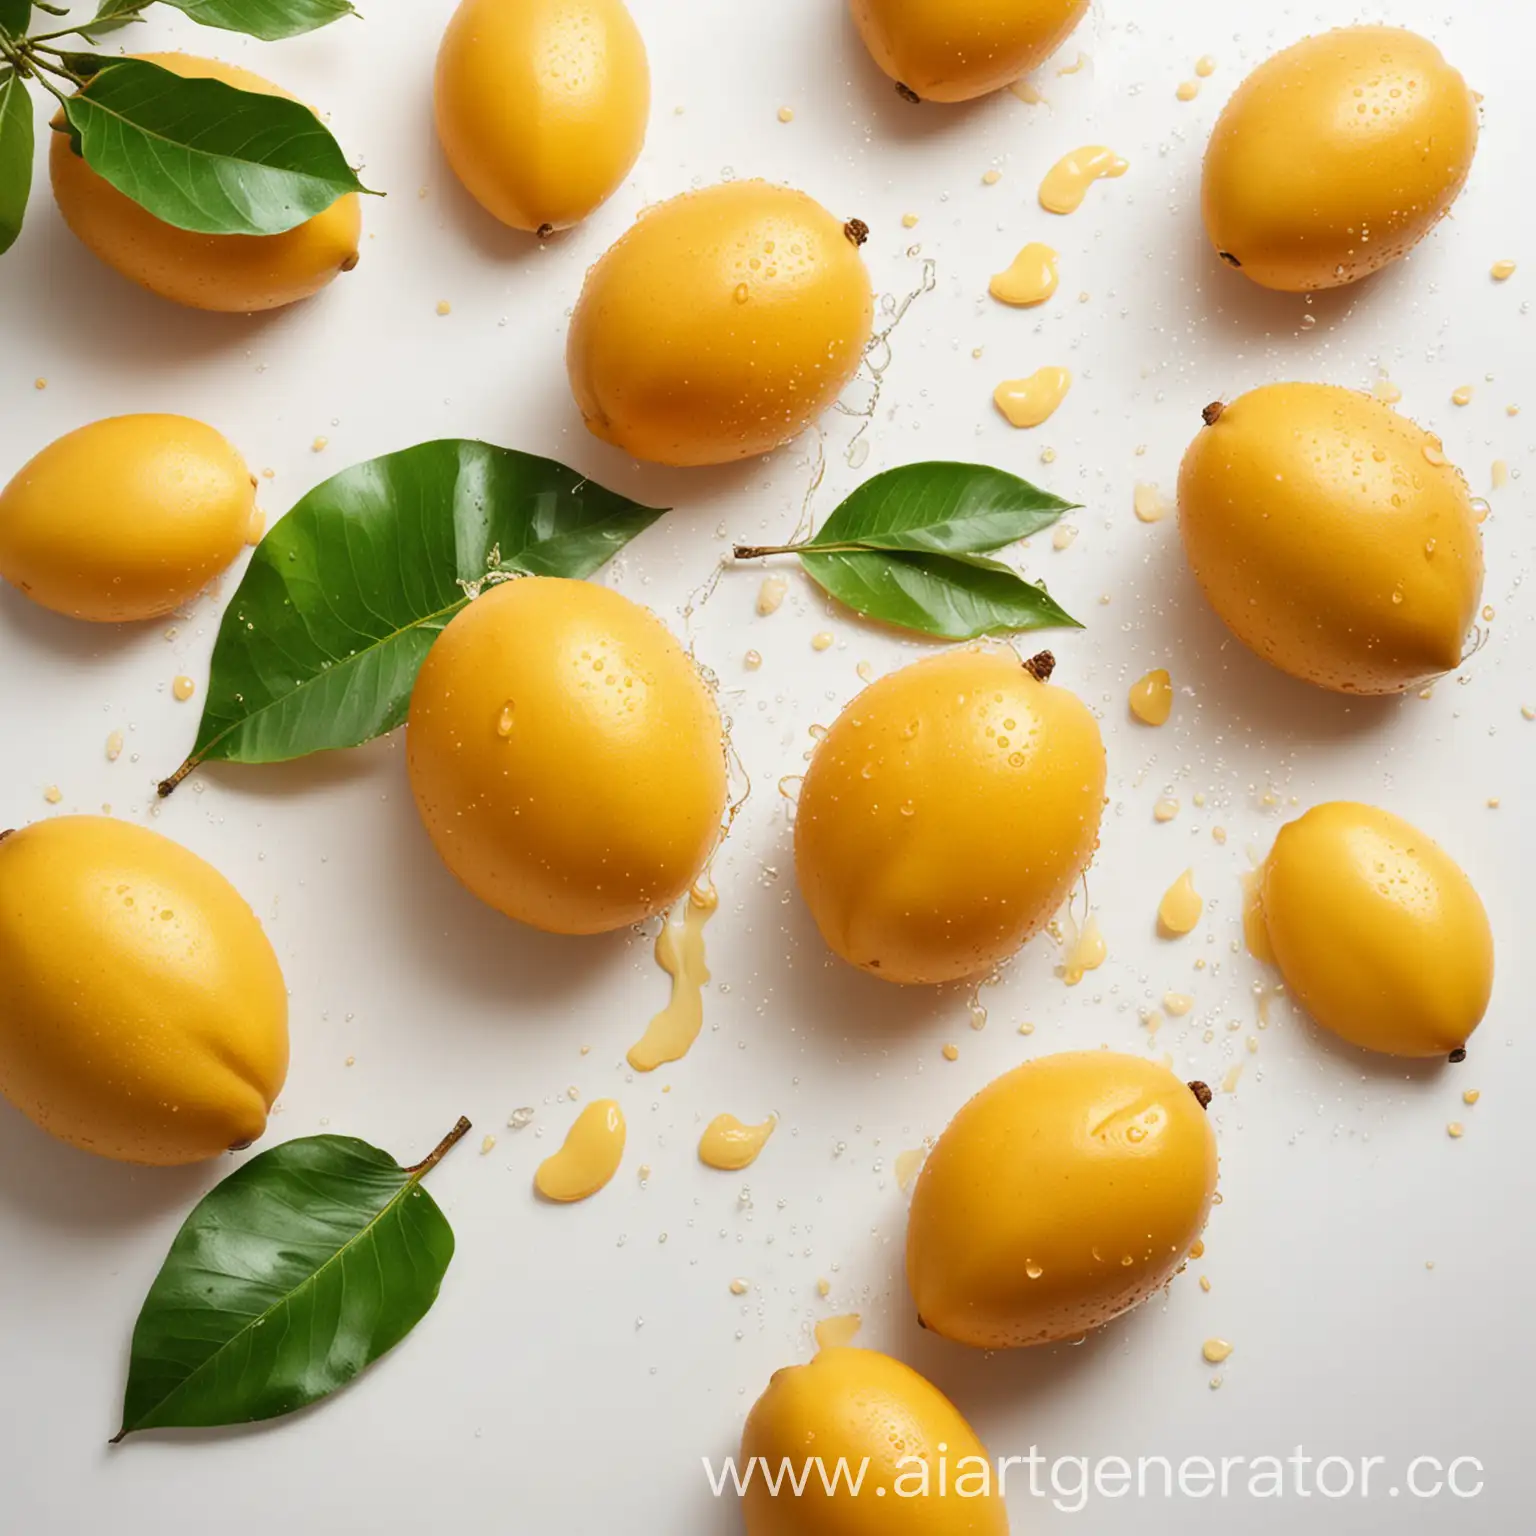 Fresh-Mangoes-on-White-Background-Vibrant-Fruit-Photography